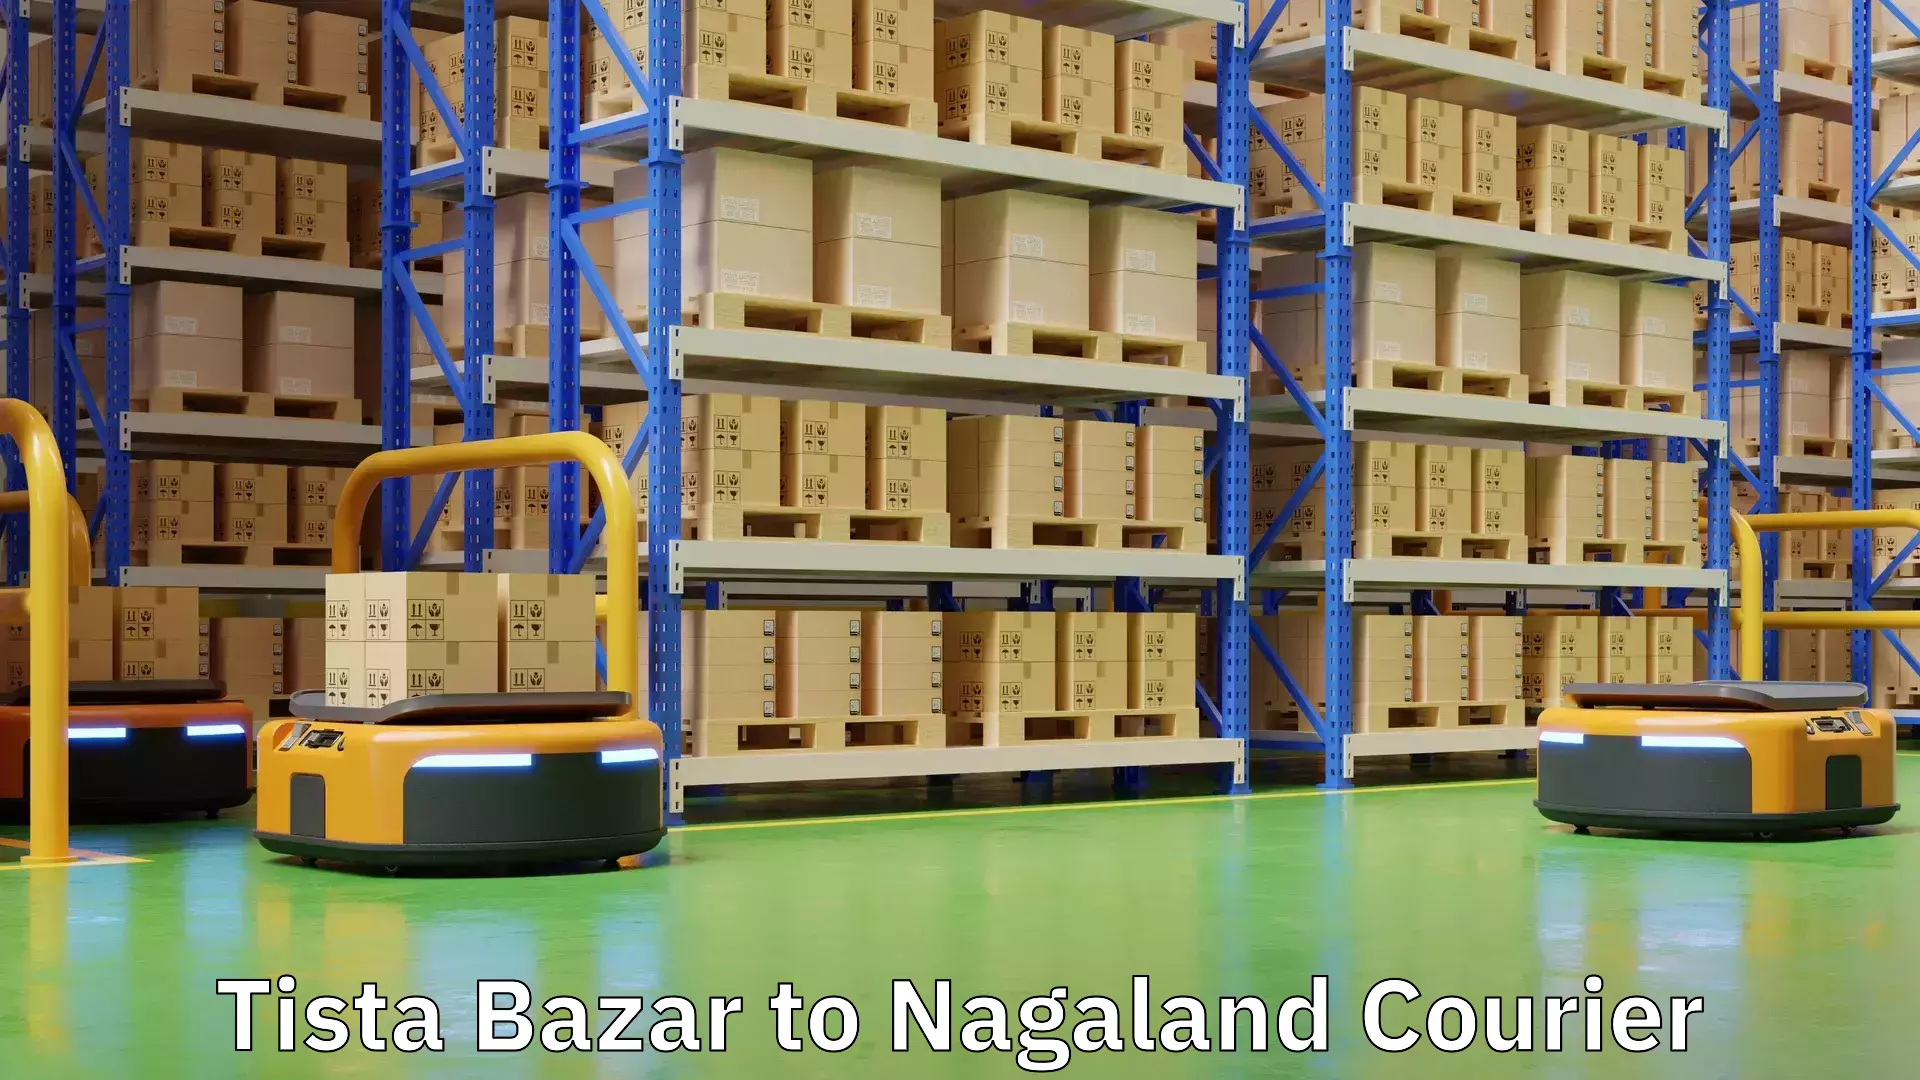 24/7 shipping services Tista Bazar to Nagaland